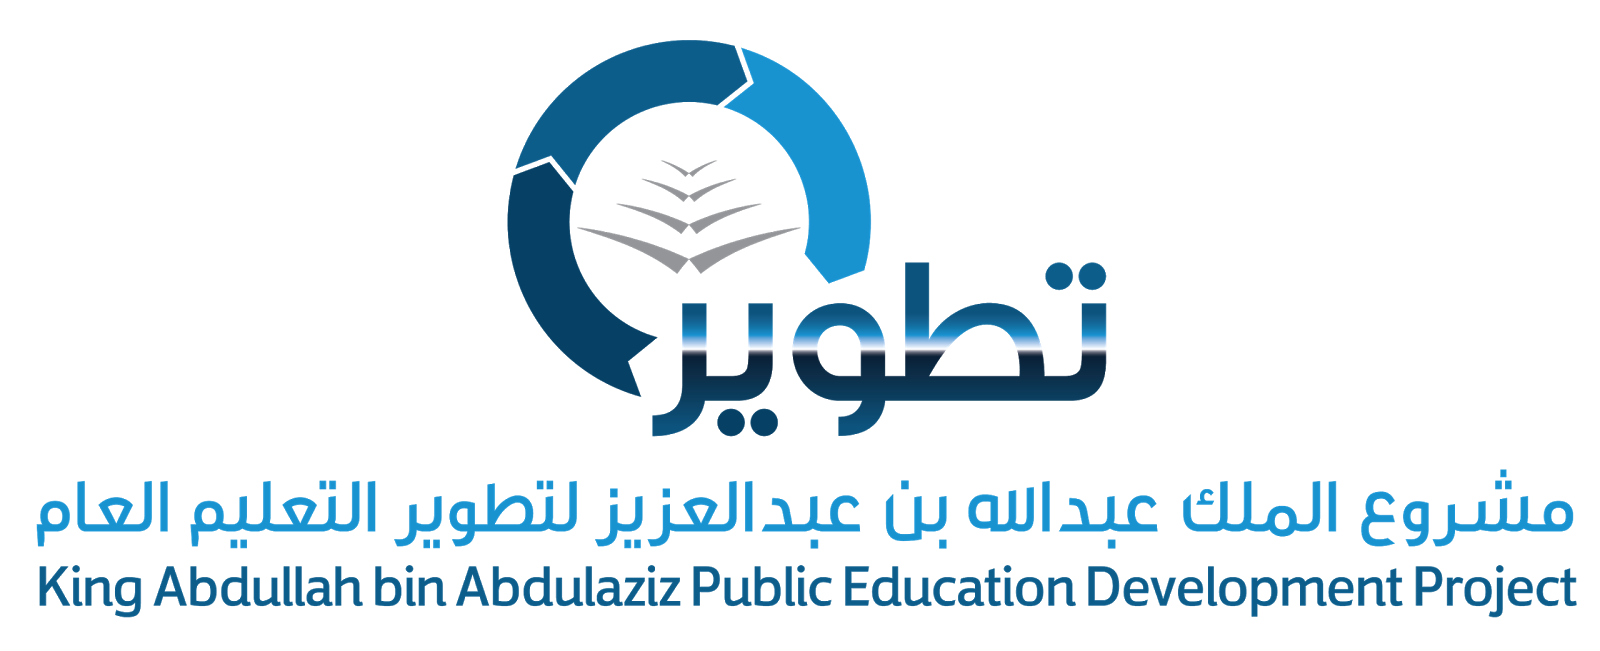 صور شعار تطوير المدارس جديدة